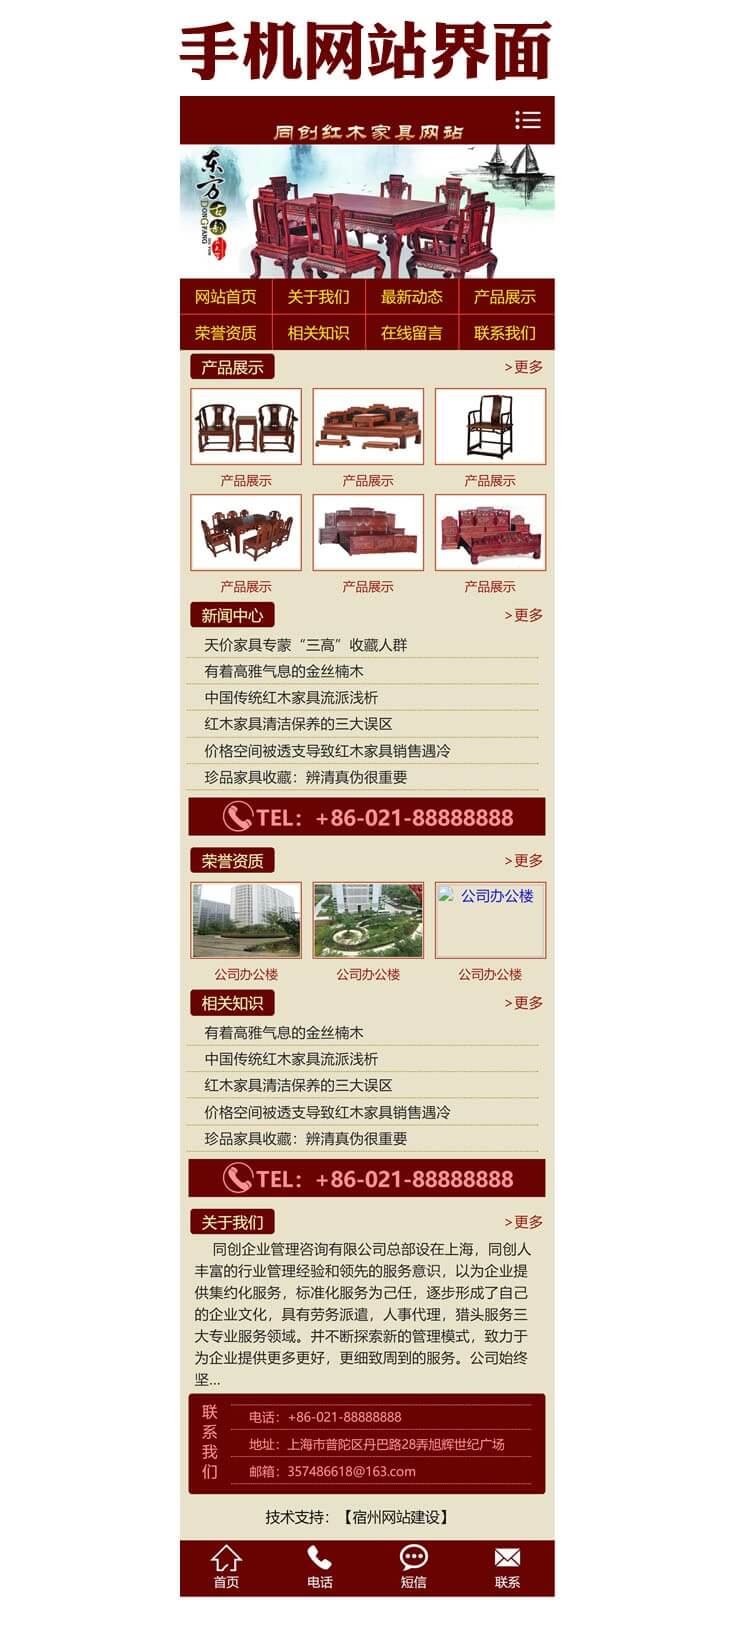 仿古红木古典家具网站源码程序模板-XX139-3